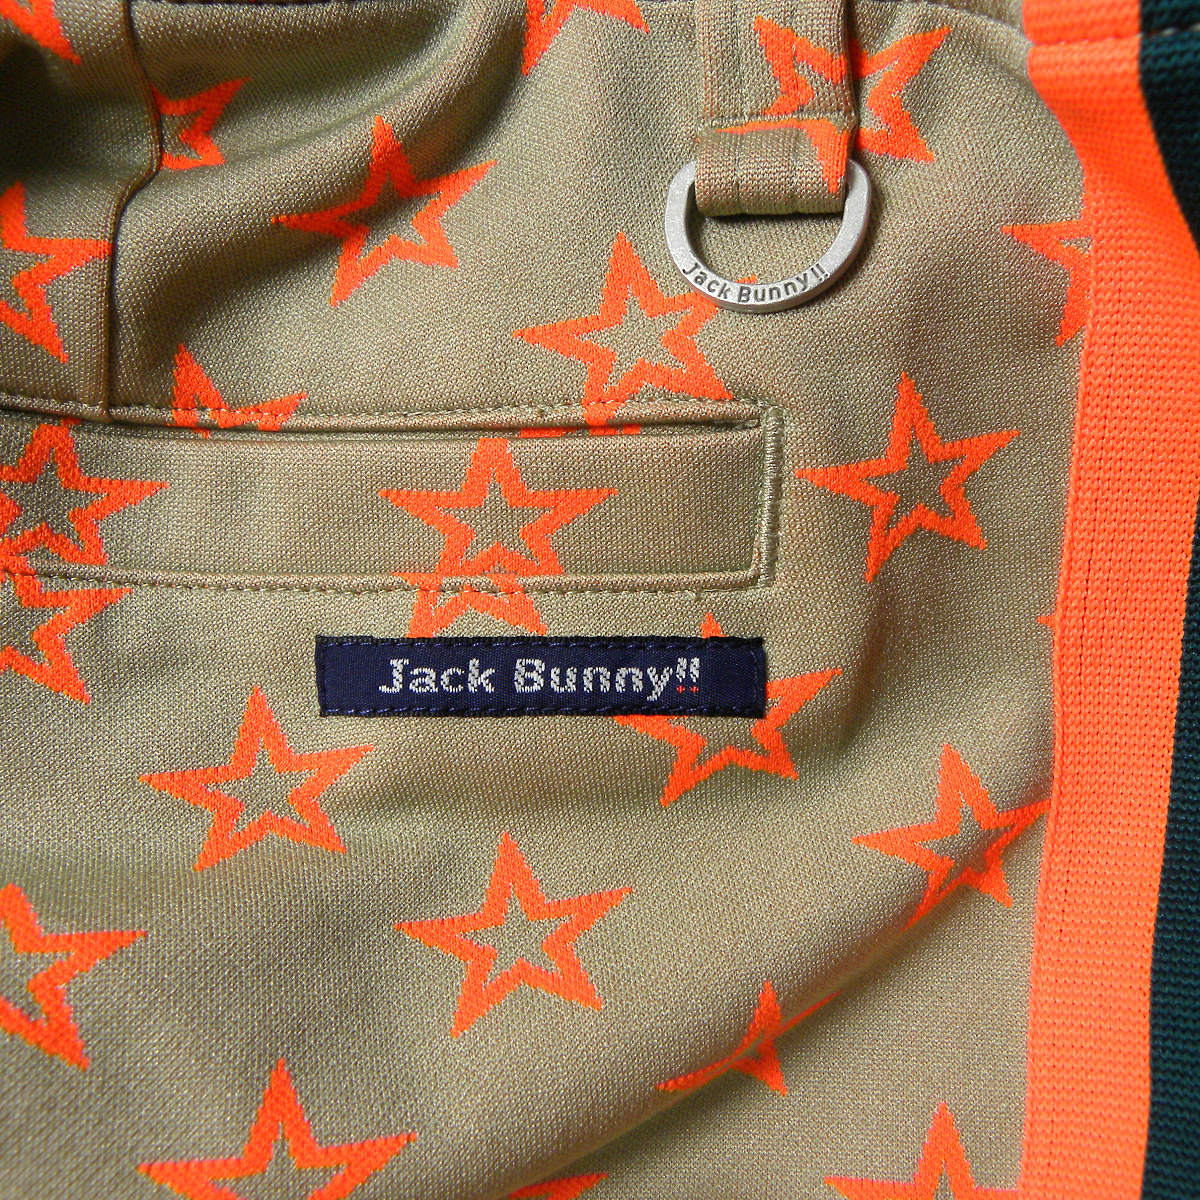 ジャックバニー Jack Bunny!! スタープリント サイドラインジャージィゴルフパンツ ウエストゴム 2 パーリーゲイツ レディース l0606-1_画像5